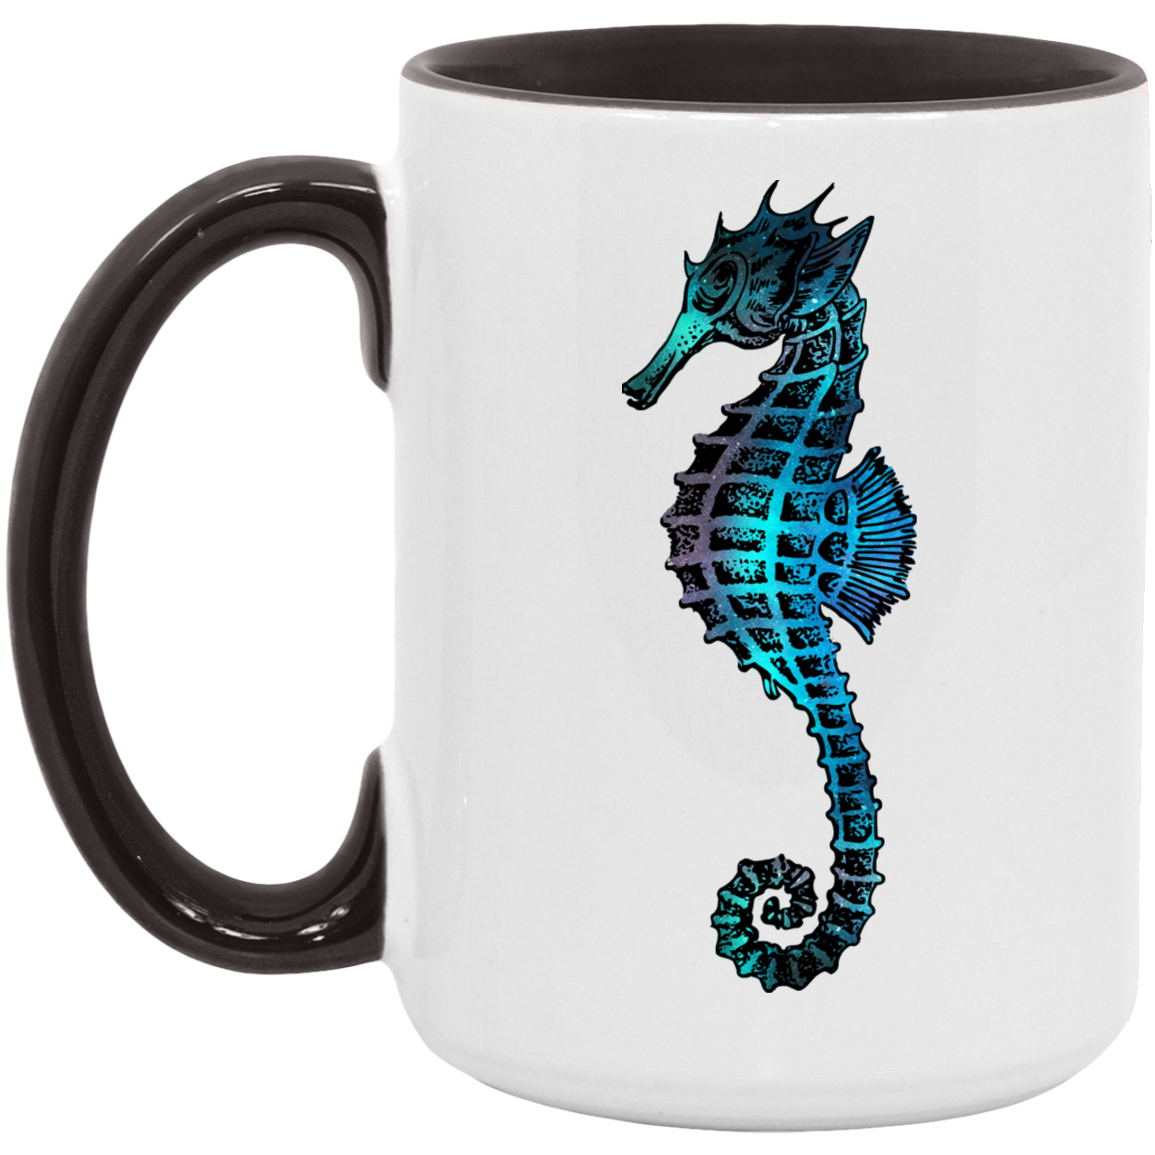 Colorful Seahorse - Mugs